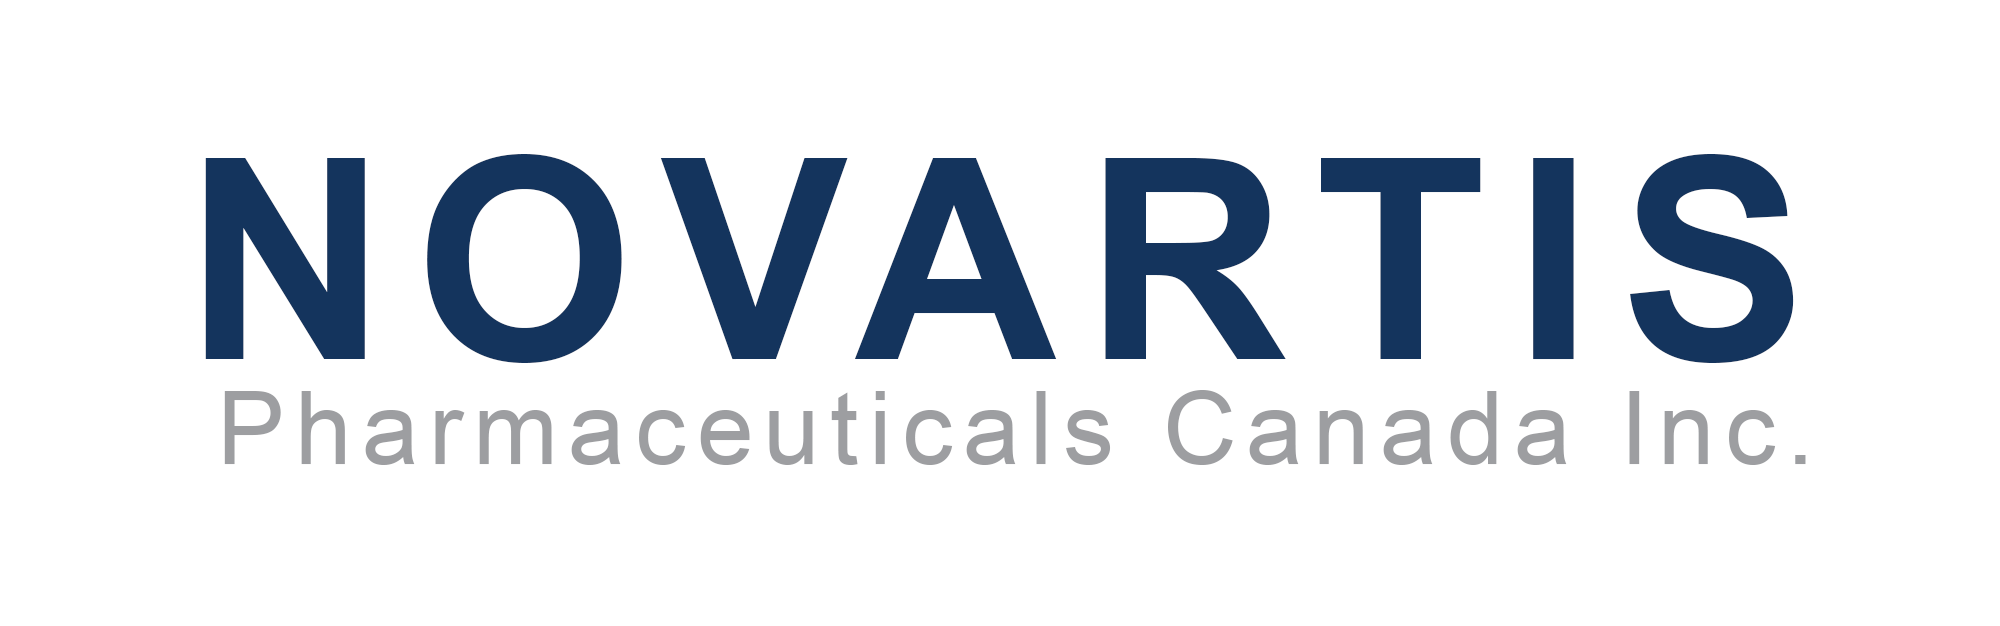 Novartis Pharmaceuticals Canada Inc